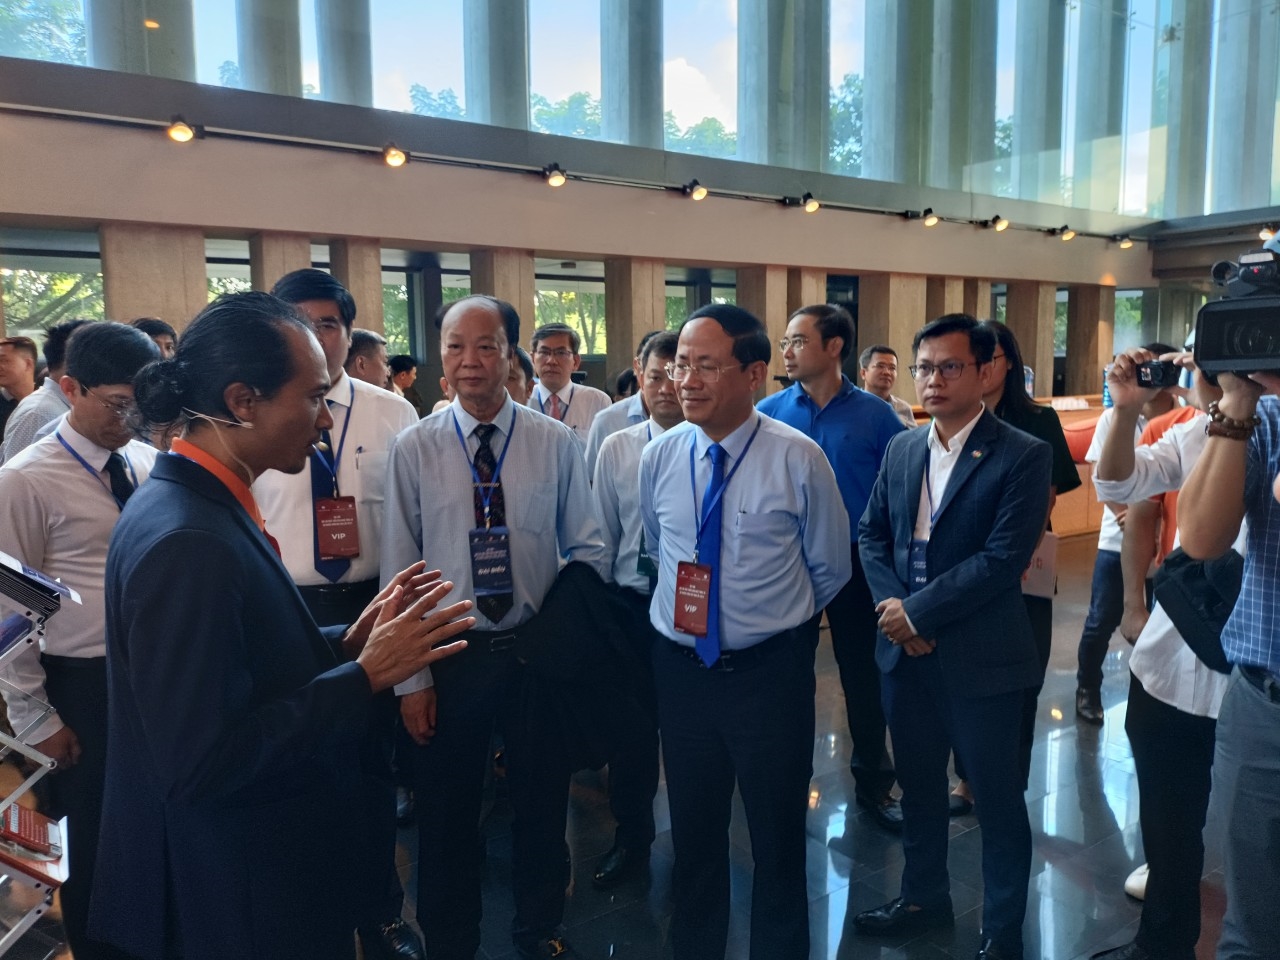 Ông Phạm Anh Tuấn, Chủ tịch UBND tỉnh Bình Định (thứ 3 từ trái sang) trao đổi với các đại biểu tham gia triển lãm